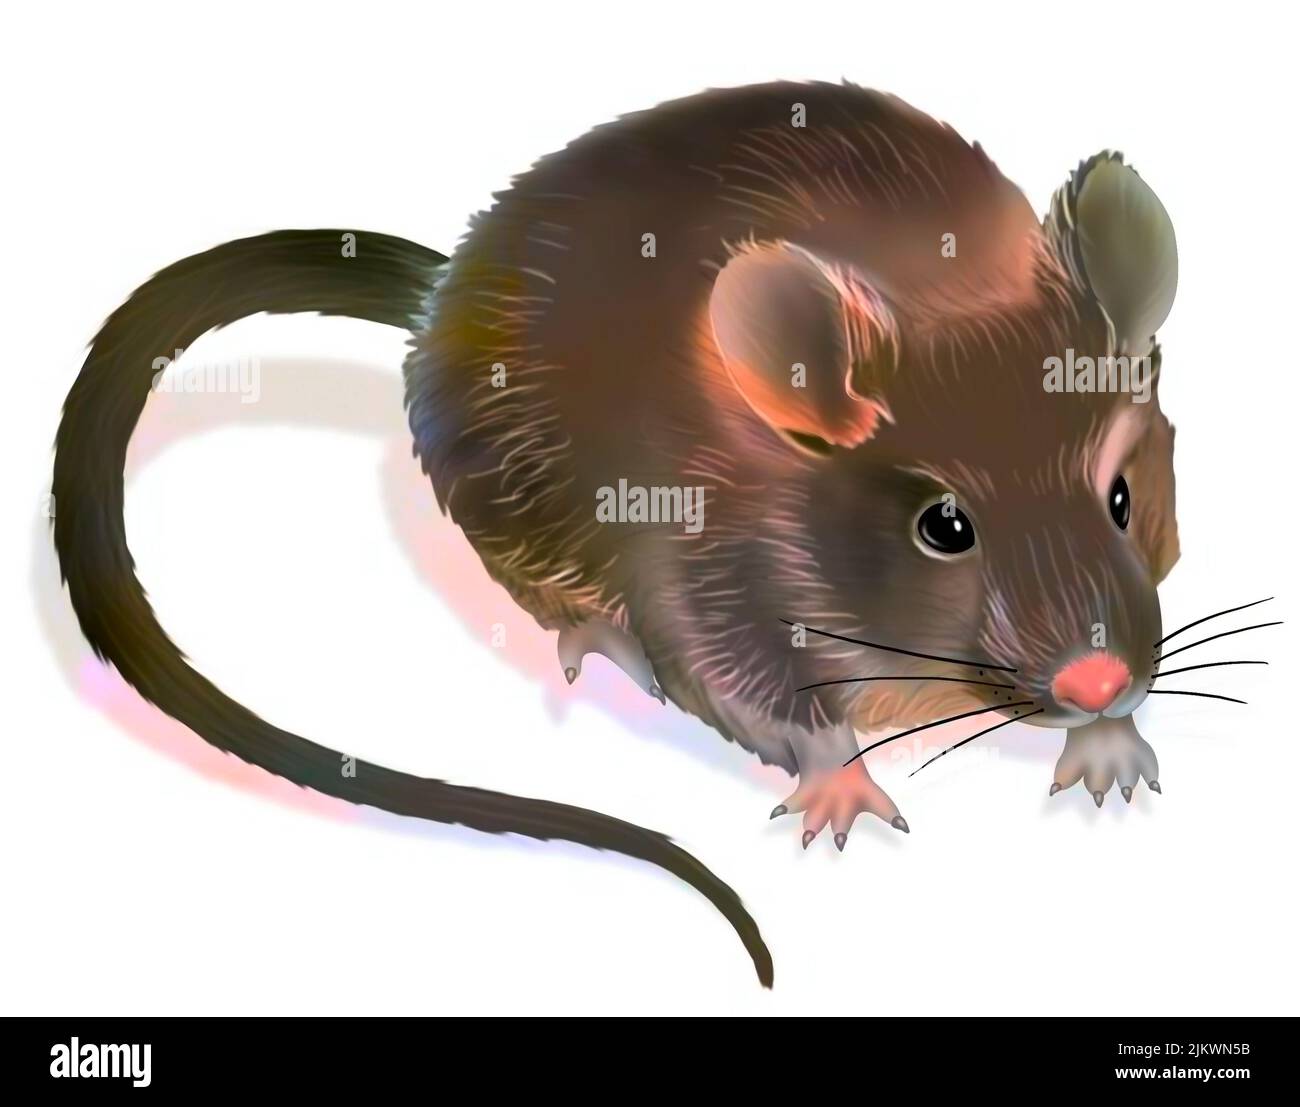 Représentation d'une souris de laboratoire sur fond blanc. Banque D'Images